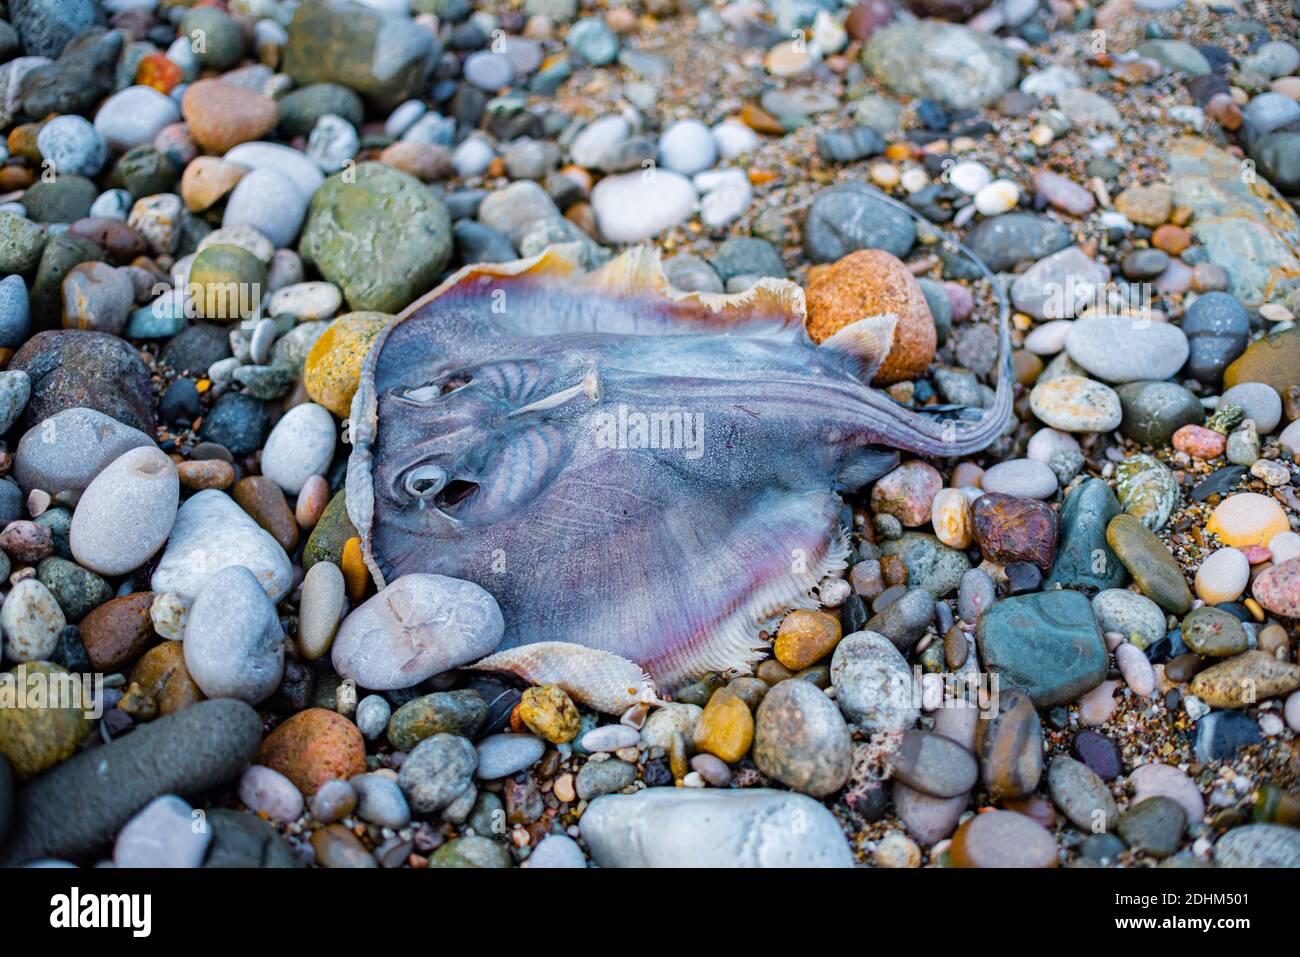 Mare nero Stingray, Stingray, Dasyatis pastinaca. Creature di mare morte sulla riva. Foto Stock